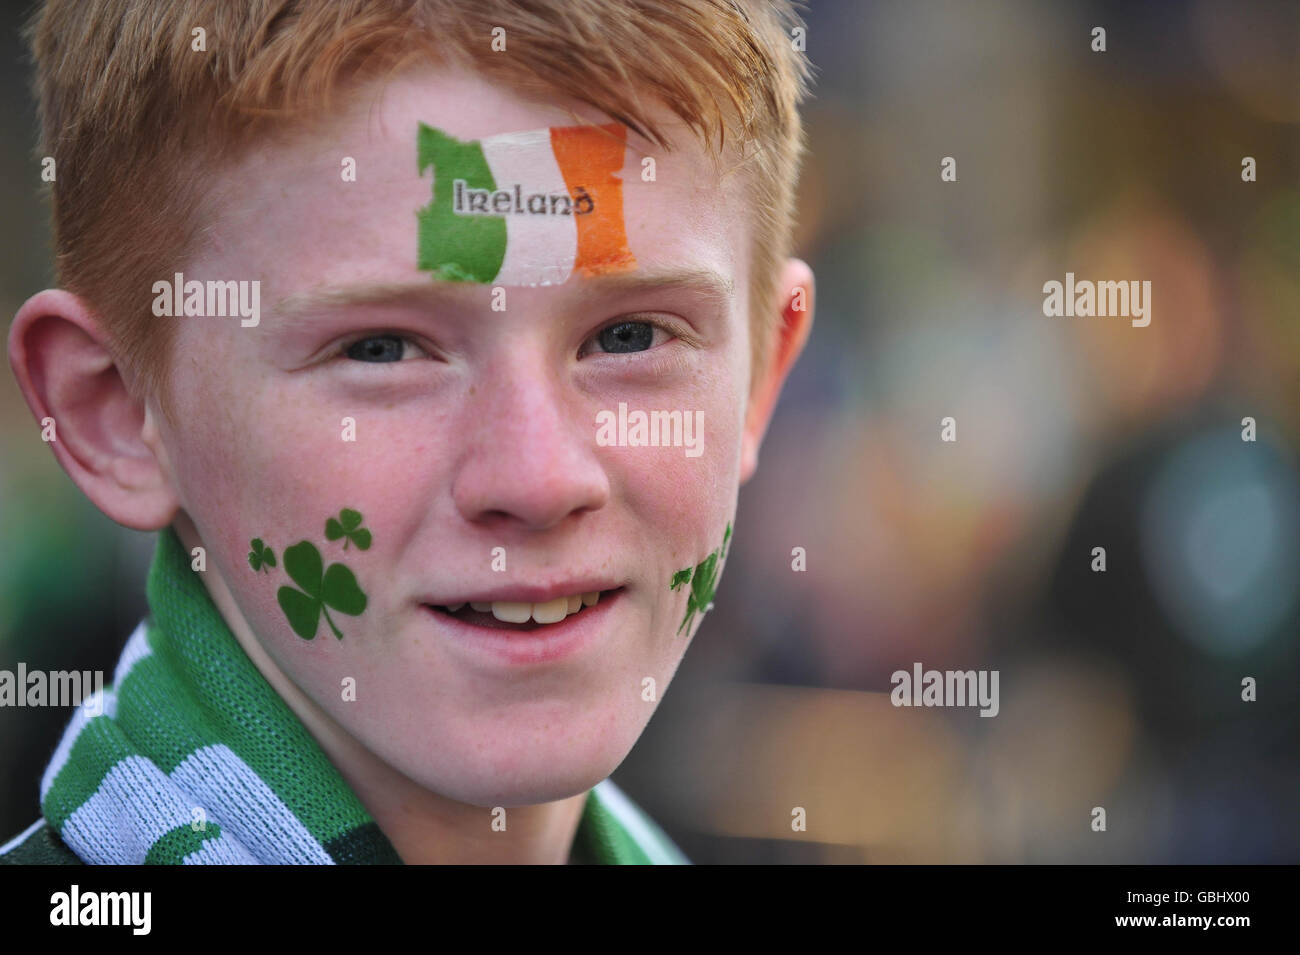 Killian Kingston, fan de rugby irlandais, âgé de 12 ans, a son visage peint dans des drapeaux et des symboles irlandais patriotes alors qu'il se prépare à assister au match final des RBS 6 Nations entre le pays de Galles et l'Irlande à Cardiff. Banque D'Images